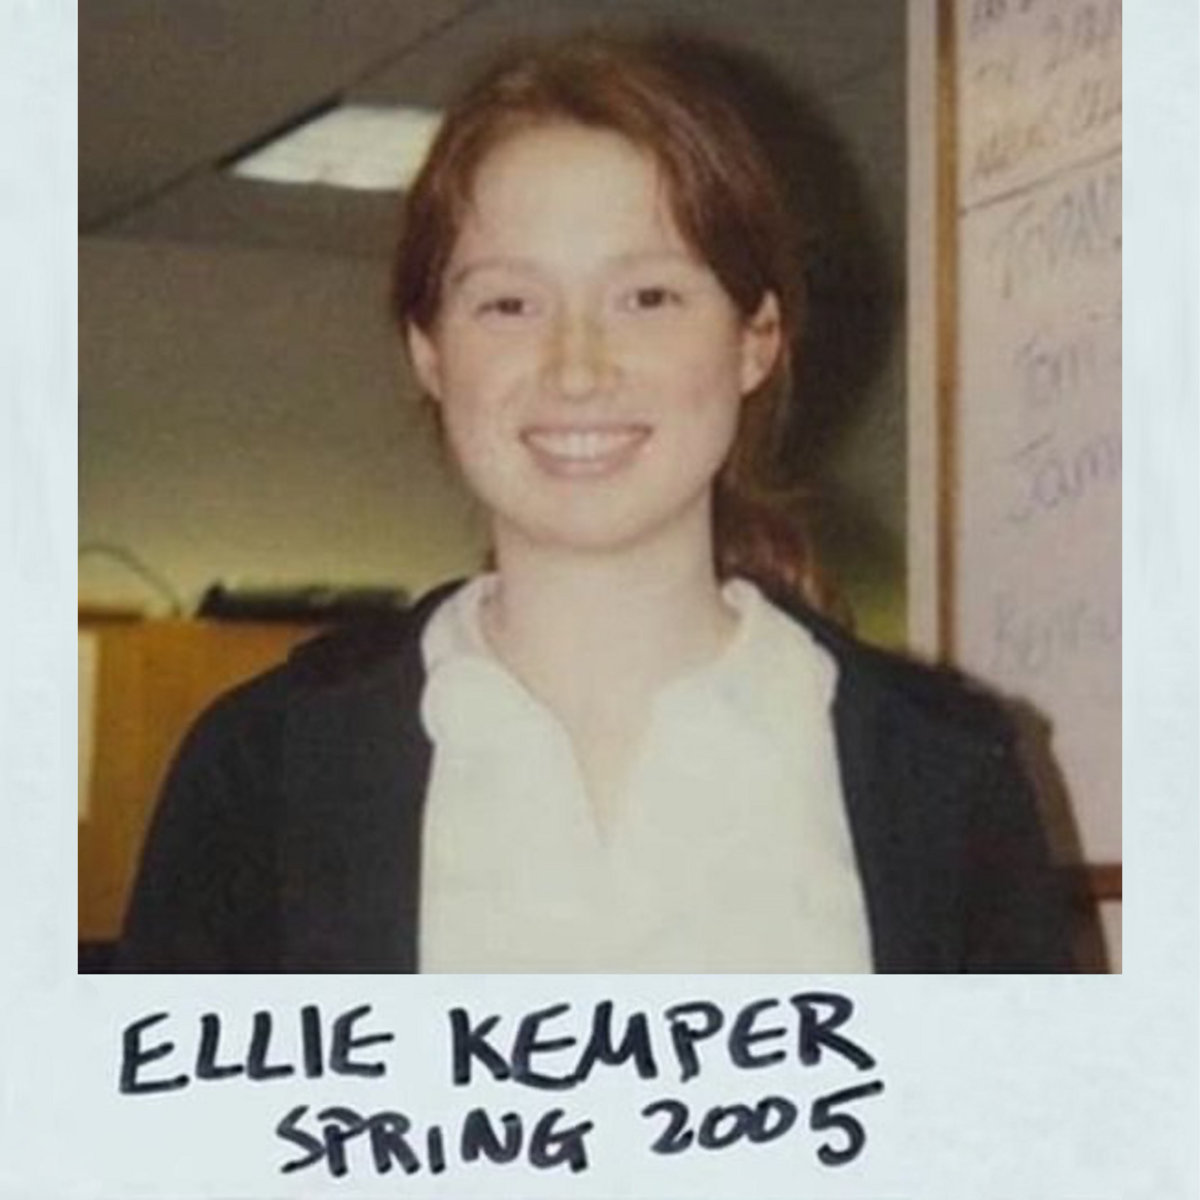 Ellie Kemper